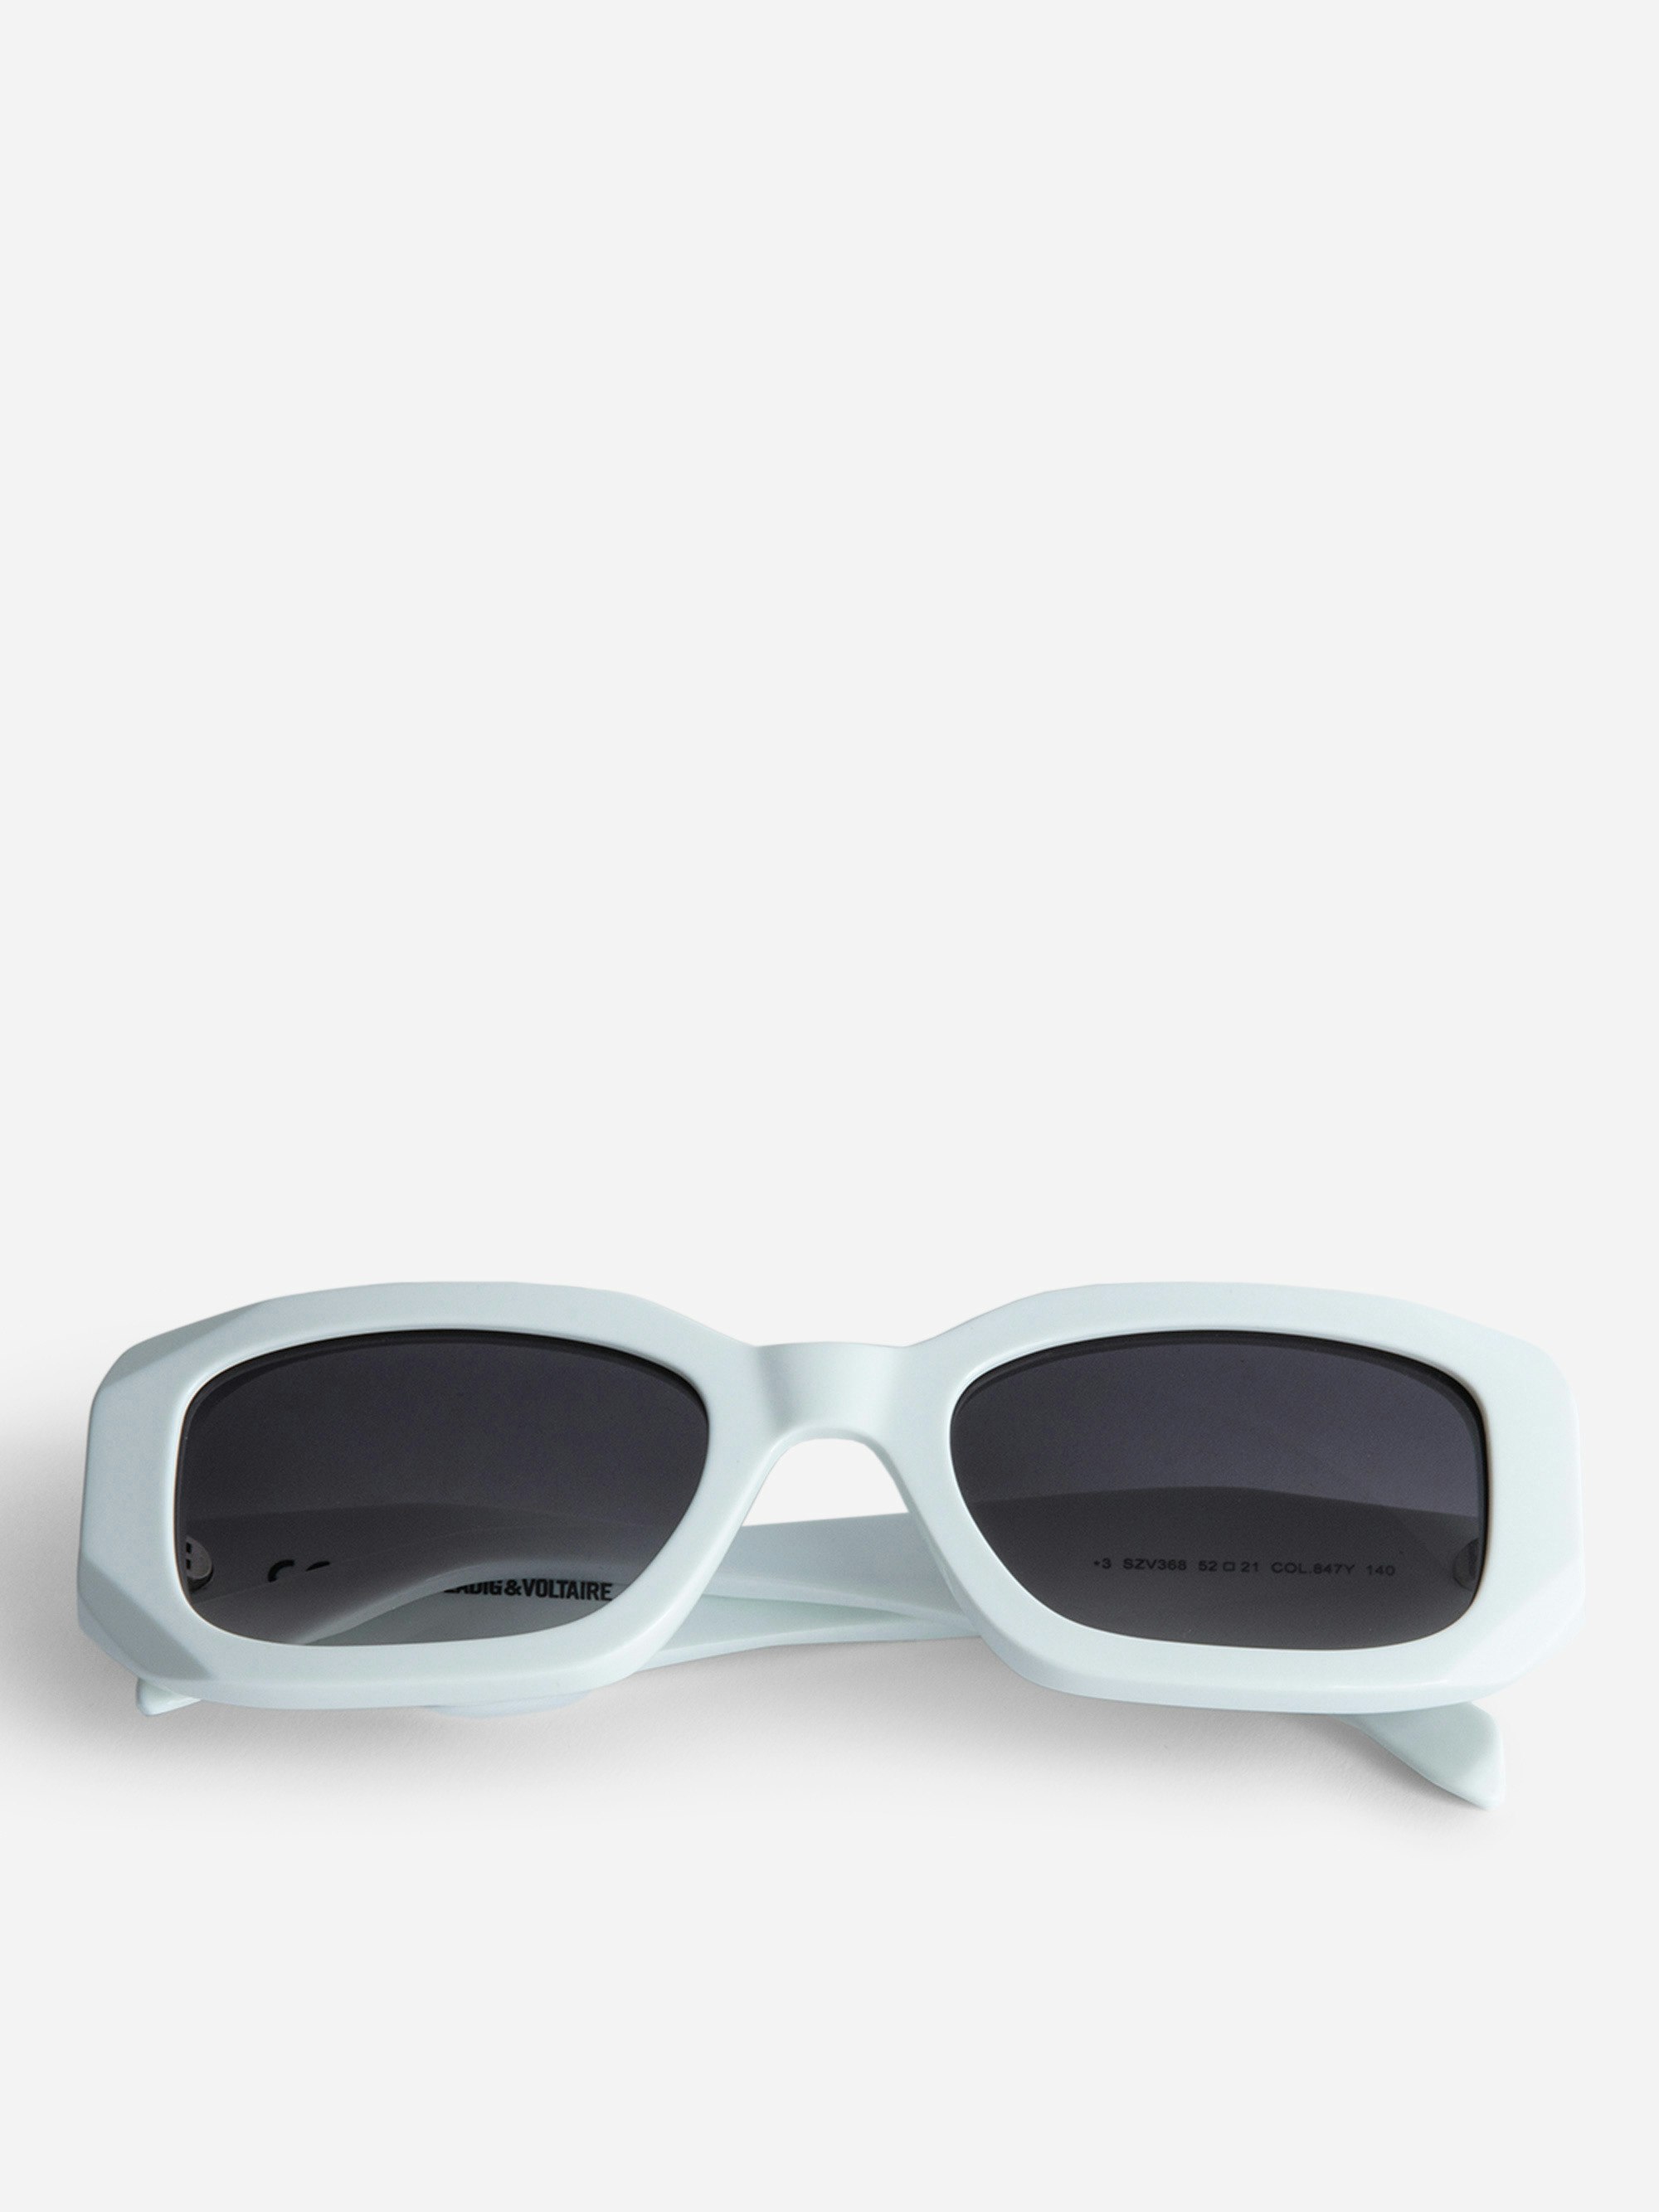 Gafas de sol ZV23H3 - Gafas de sol unisex rectangulares de color blanco con patillas desestructuradas con alas.